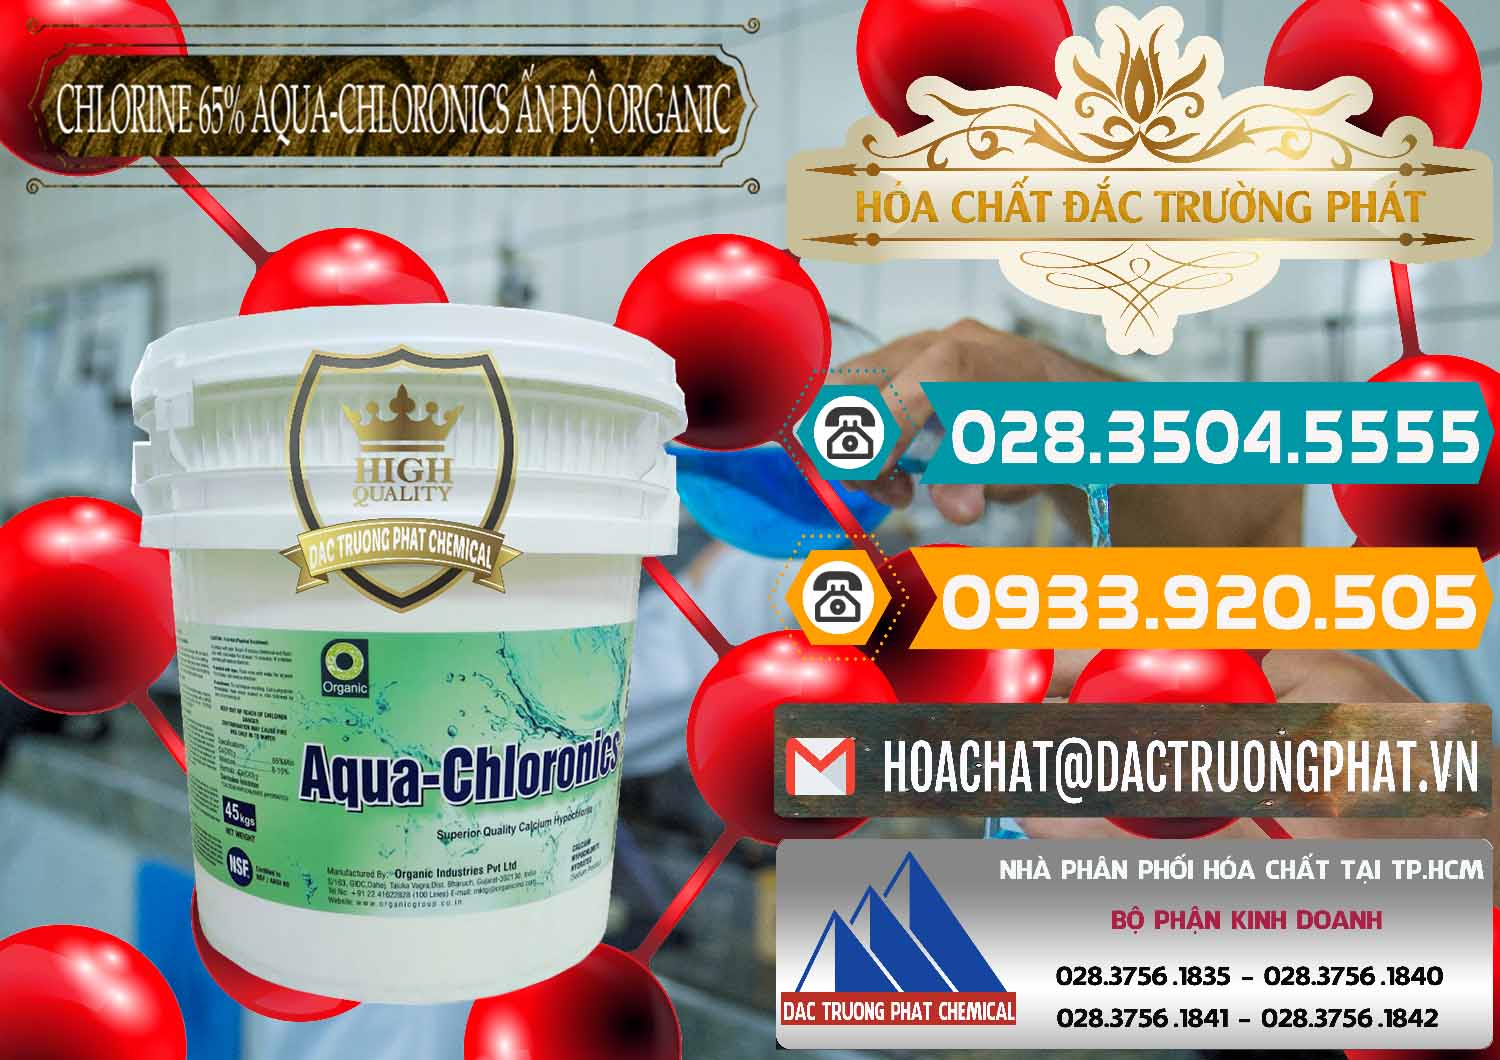 Công ty chuyên nhập khẩu ( bán ) Chlorine – Clorin 65% Aqua-Chloronics Ấn Độ Organic India - 0210 - Nơi chuyên nhập khẩu - cung cấp hóa chất tại TP.HCM - congtyhoachat.vn